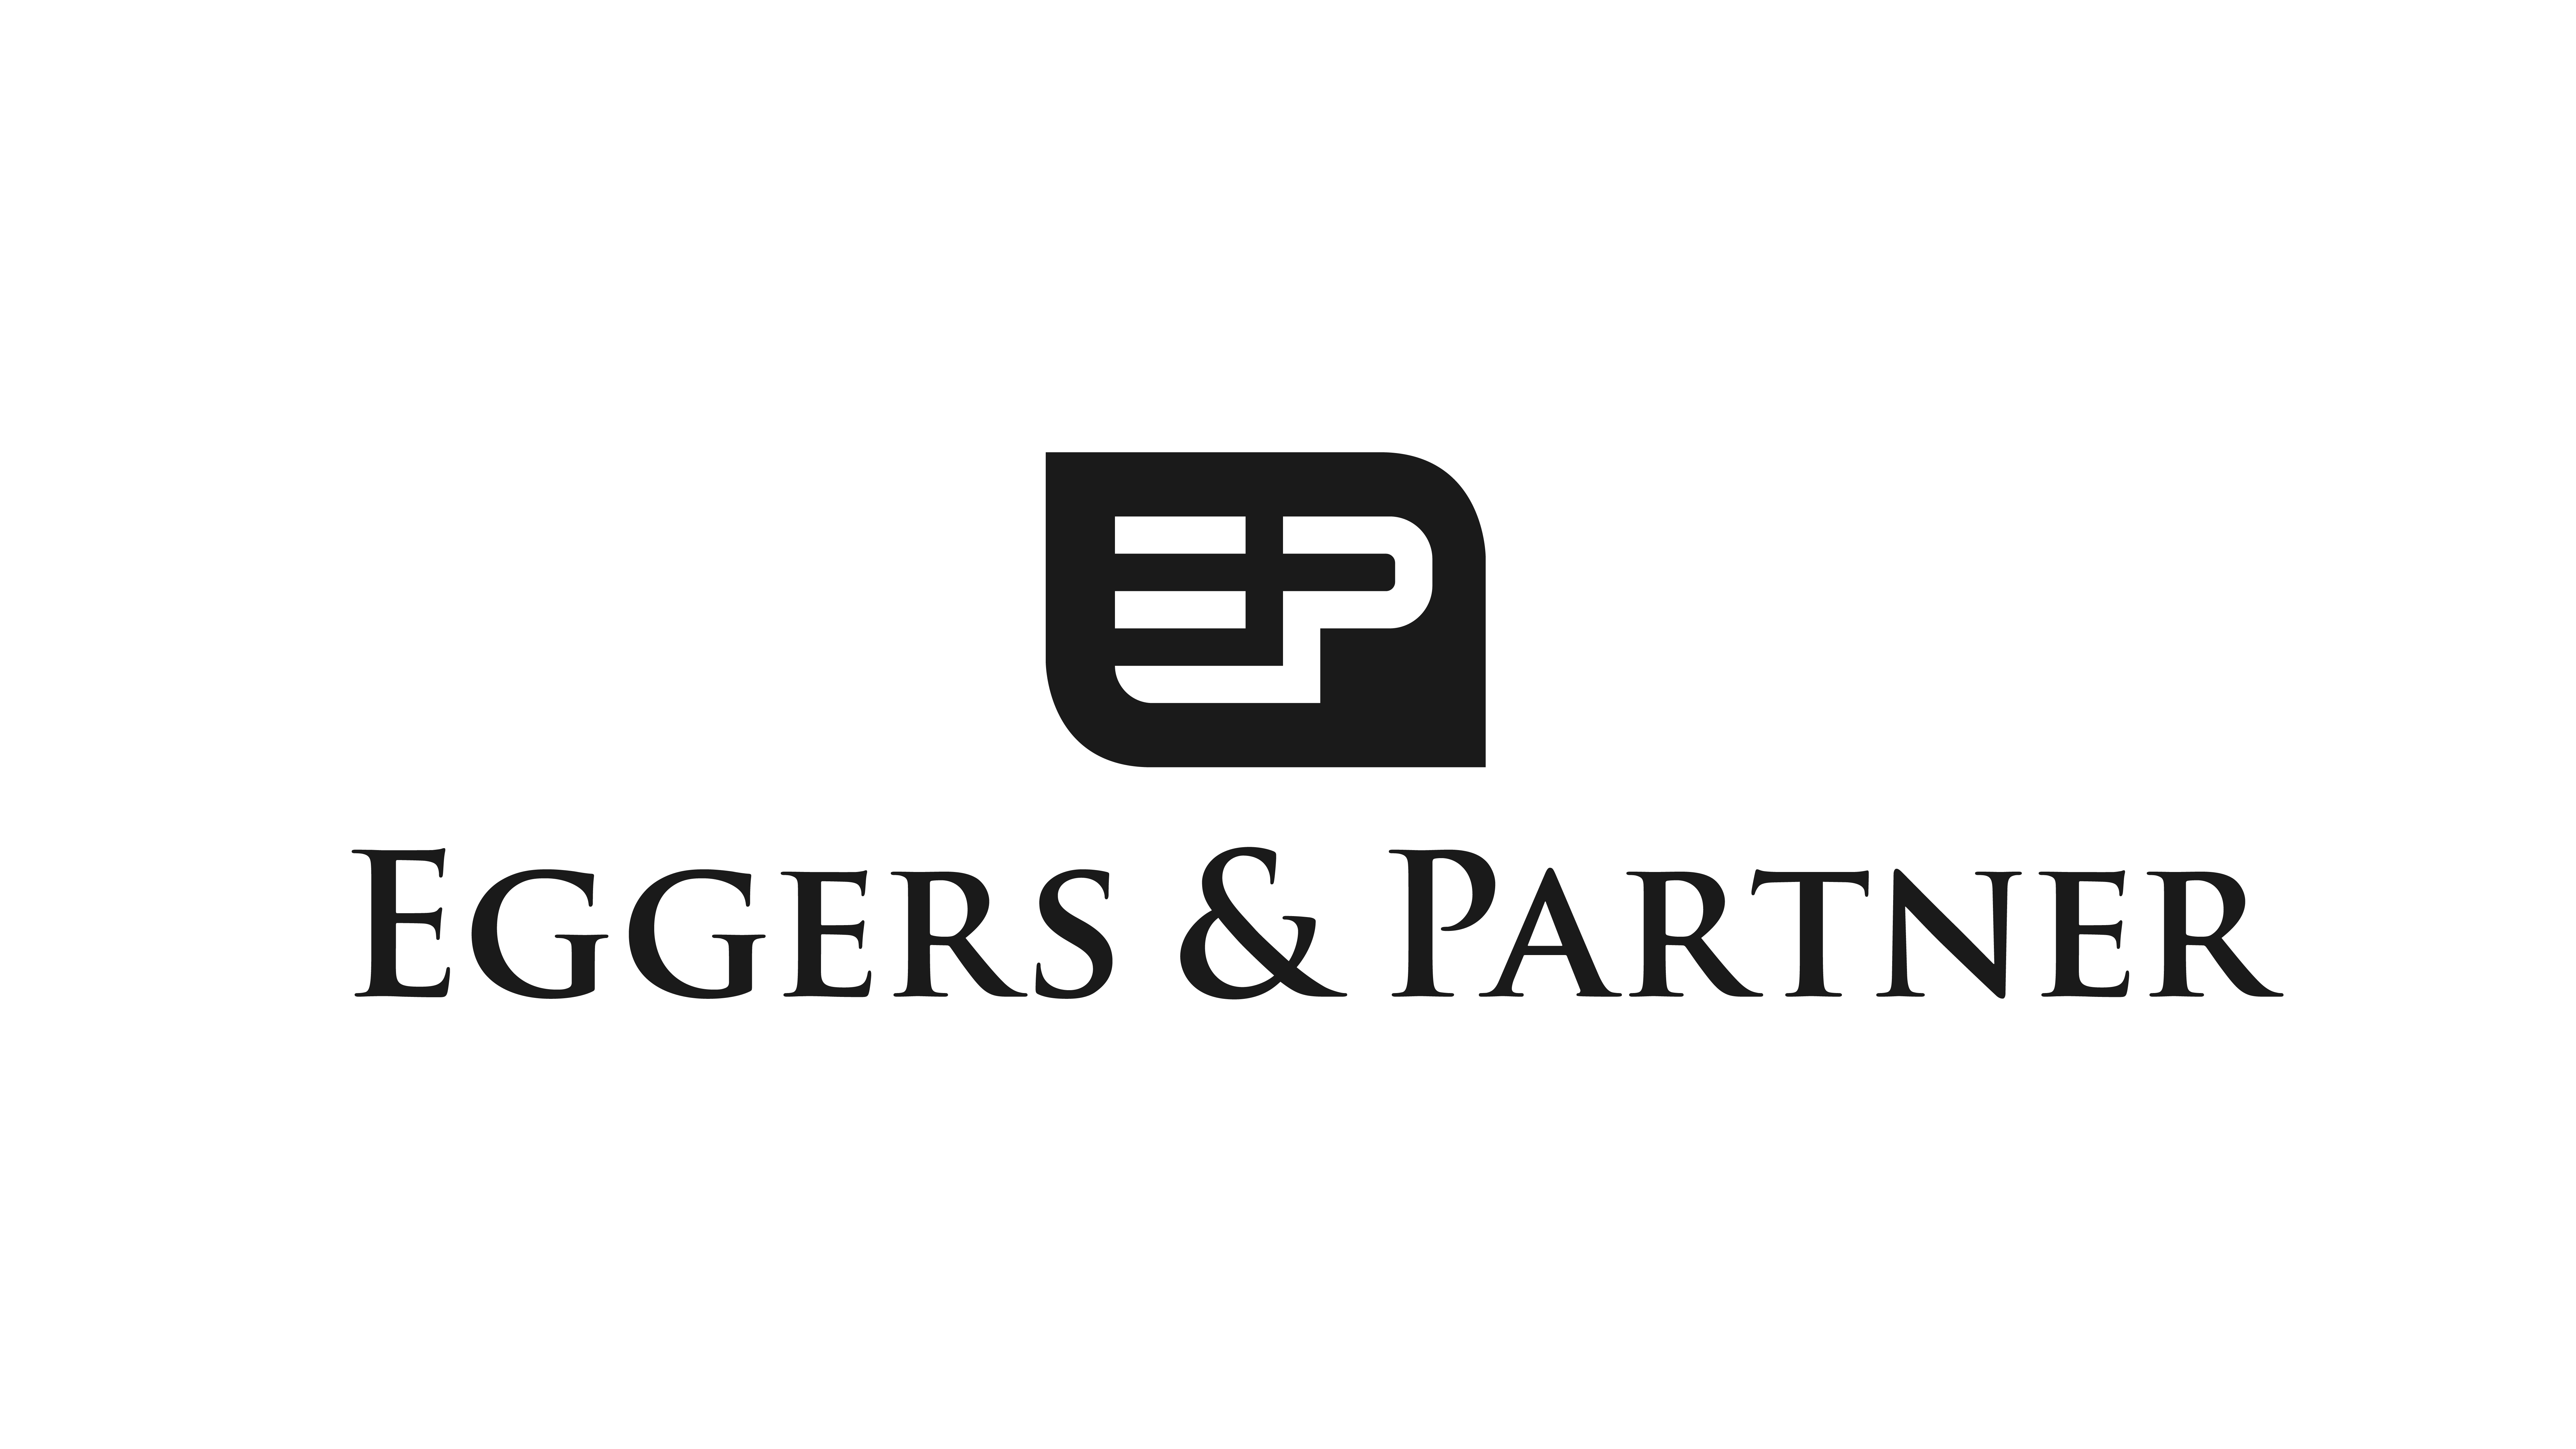 EGGERS & PARTNER